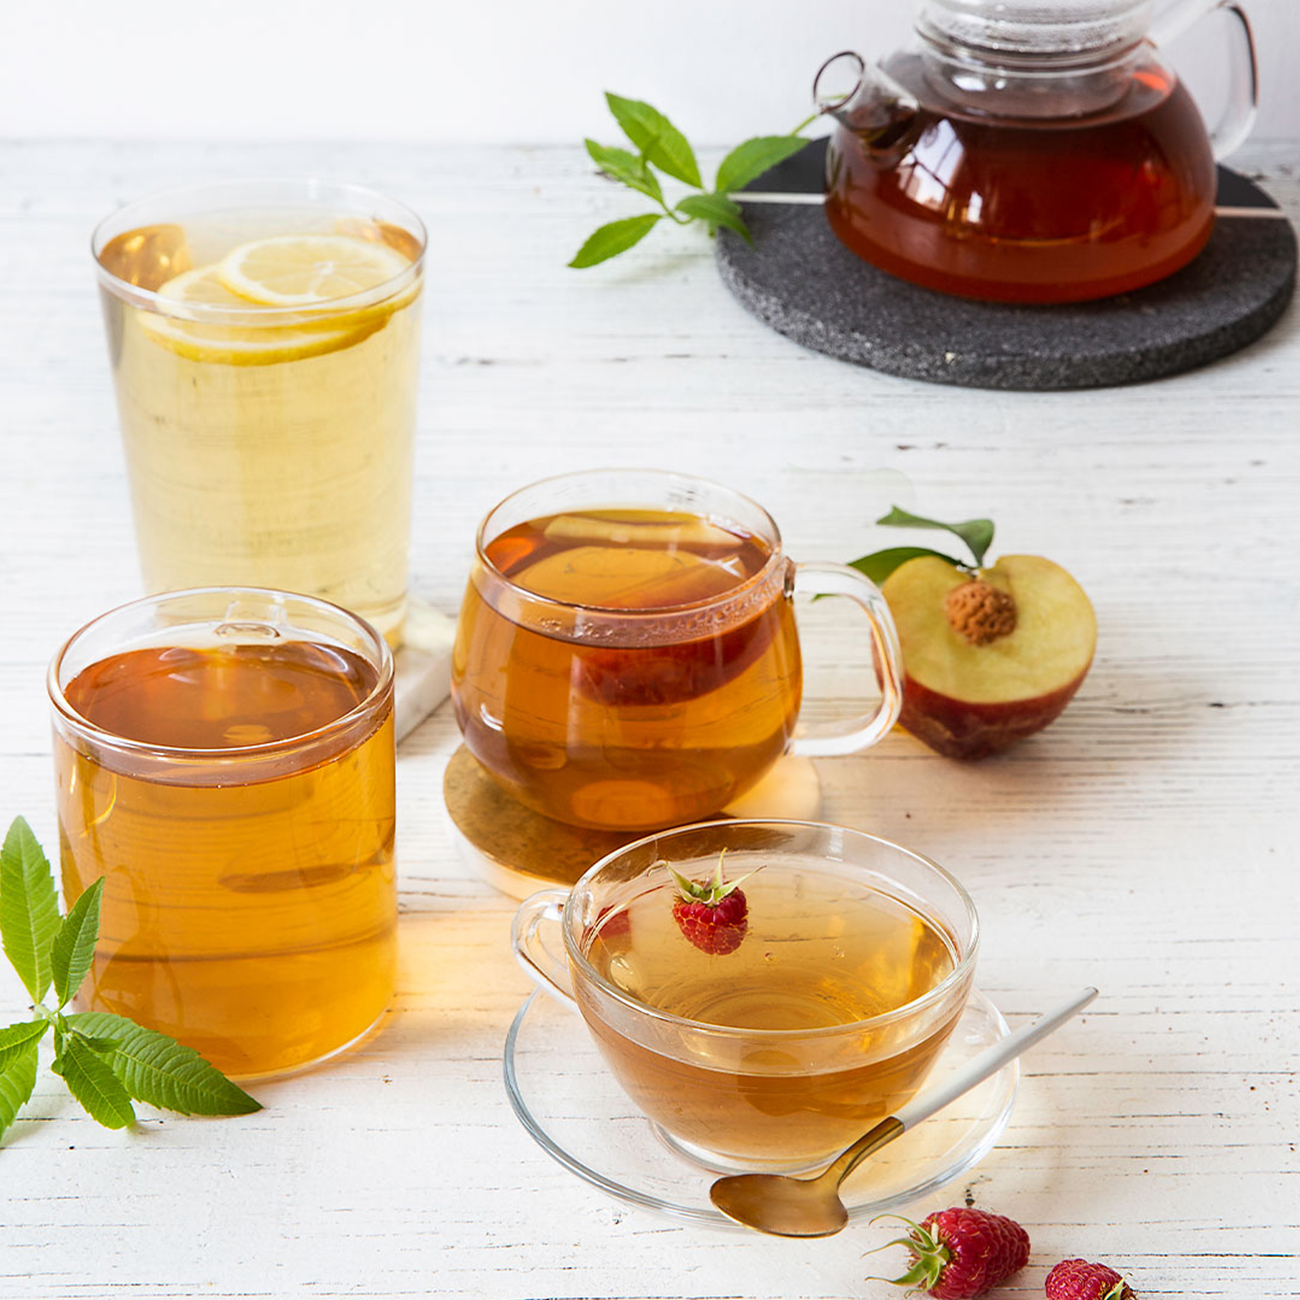 Tazas de té Herbalife Nutrition de sabores de limón, frambuesa y melocotón